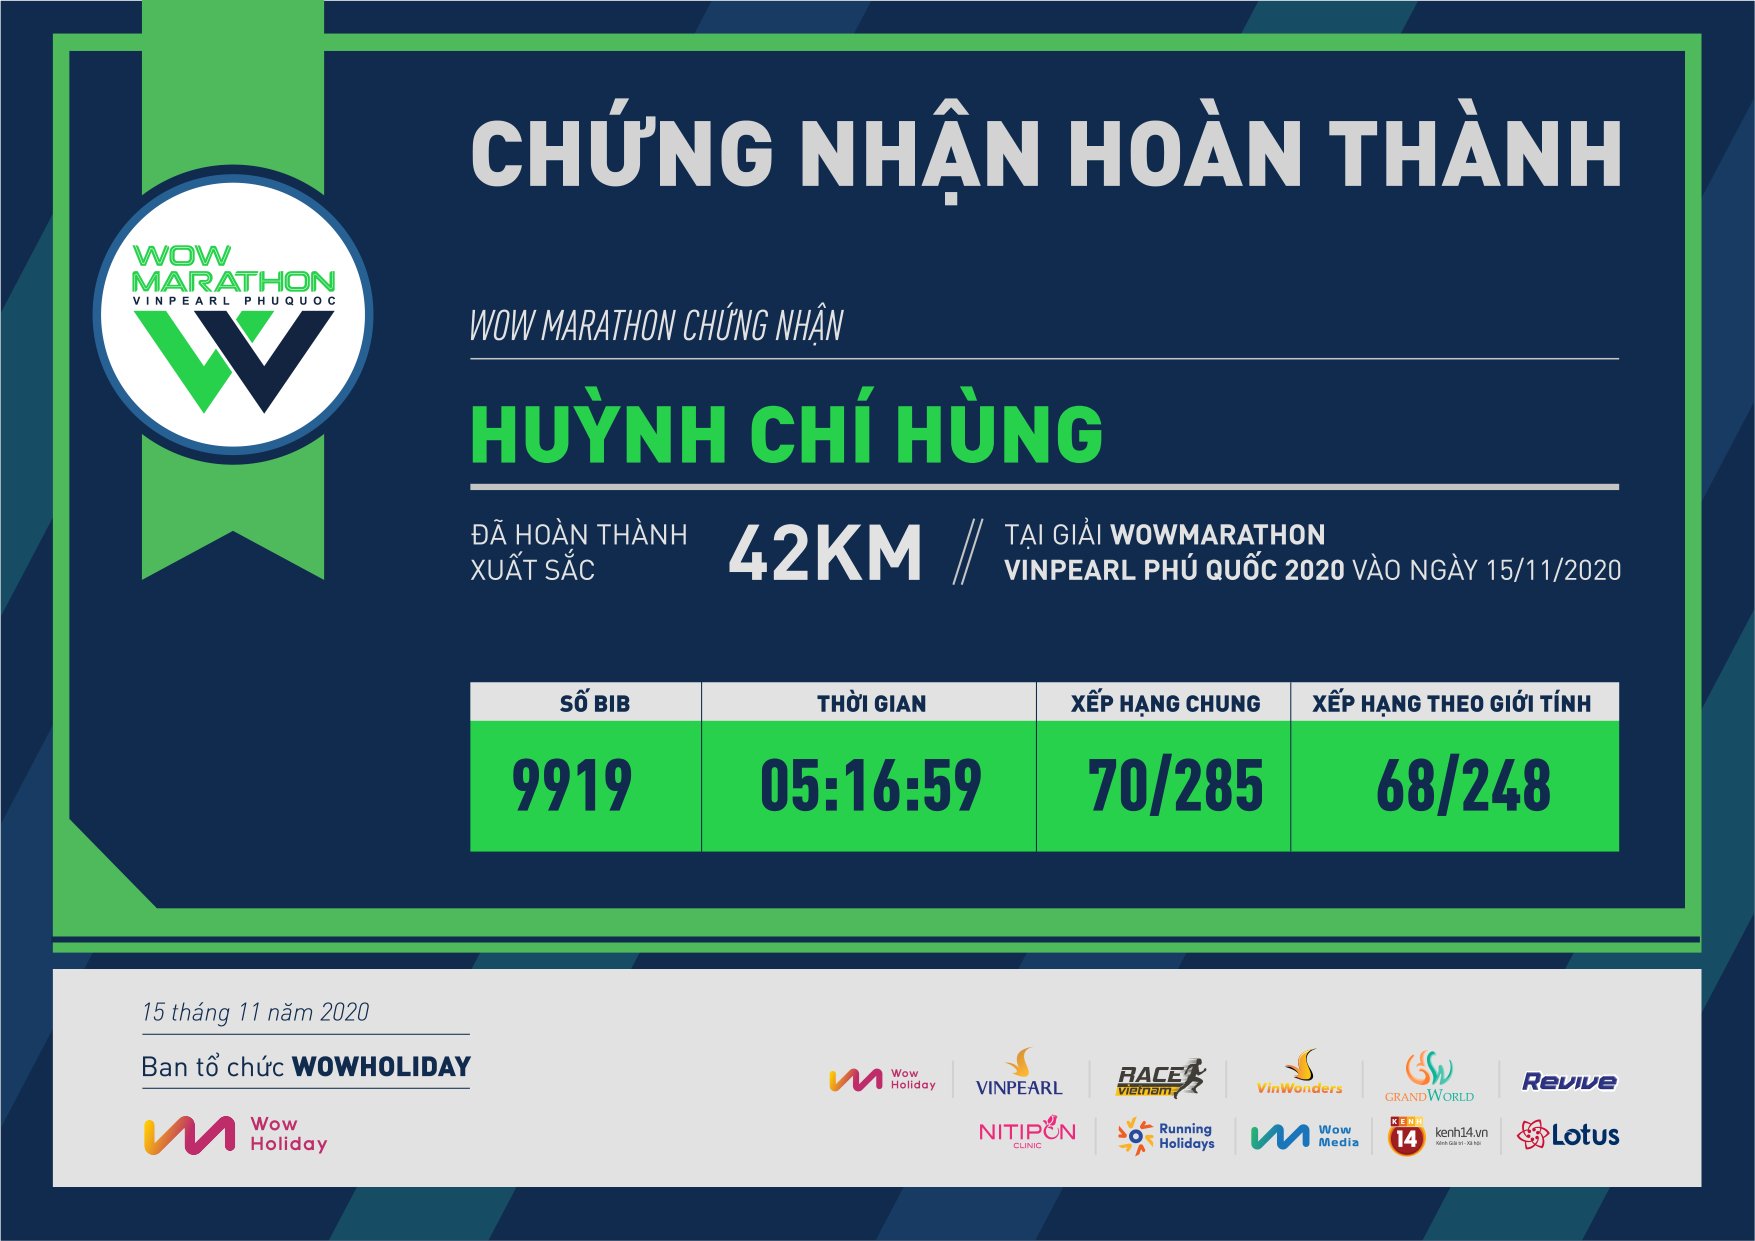 9919 - Huỳnh Chí Hùng